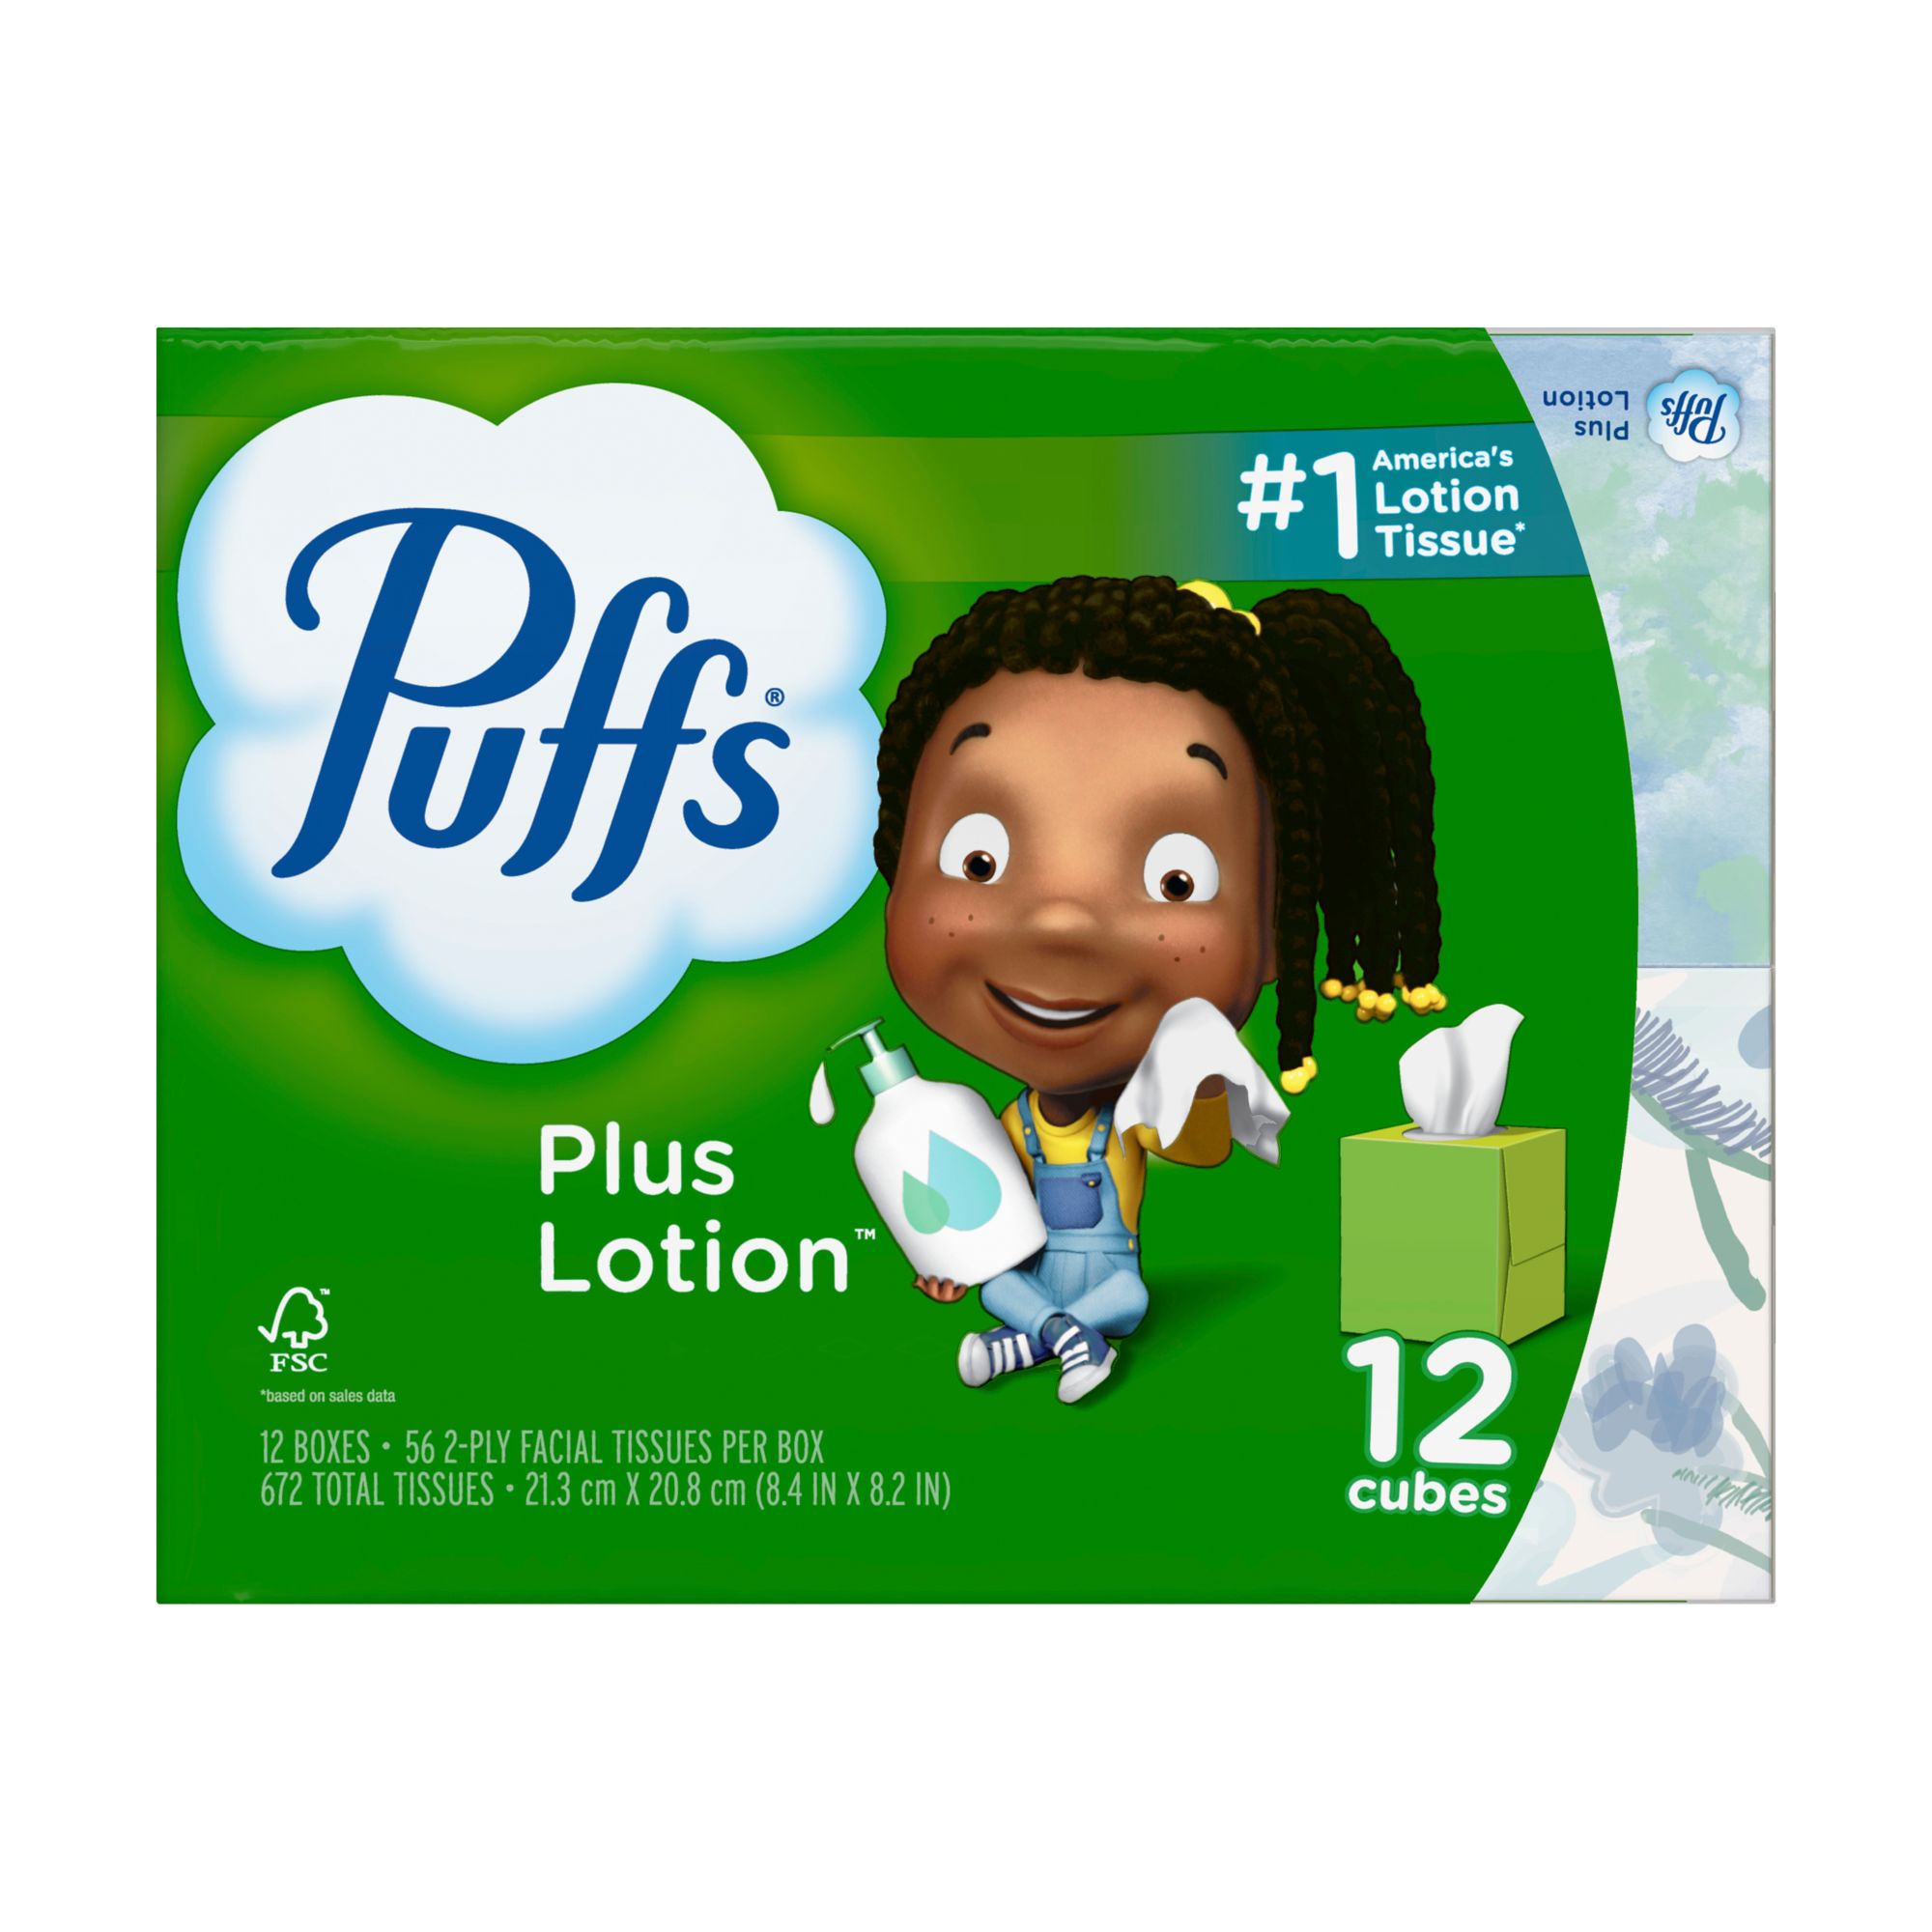 Puffs Plus Lotion Facial Tissue, 12 Cube Boxes/56 Tissues Per Box